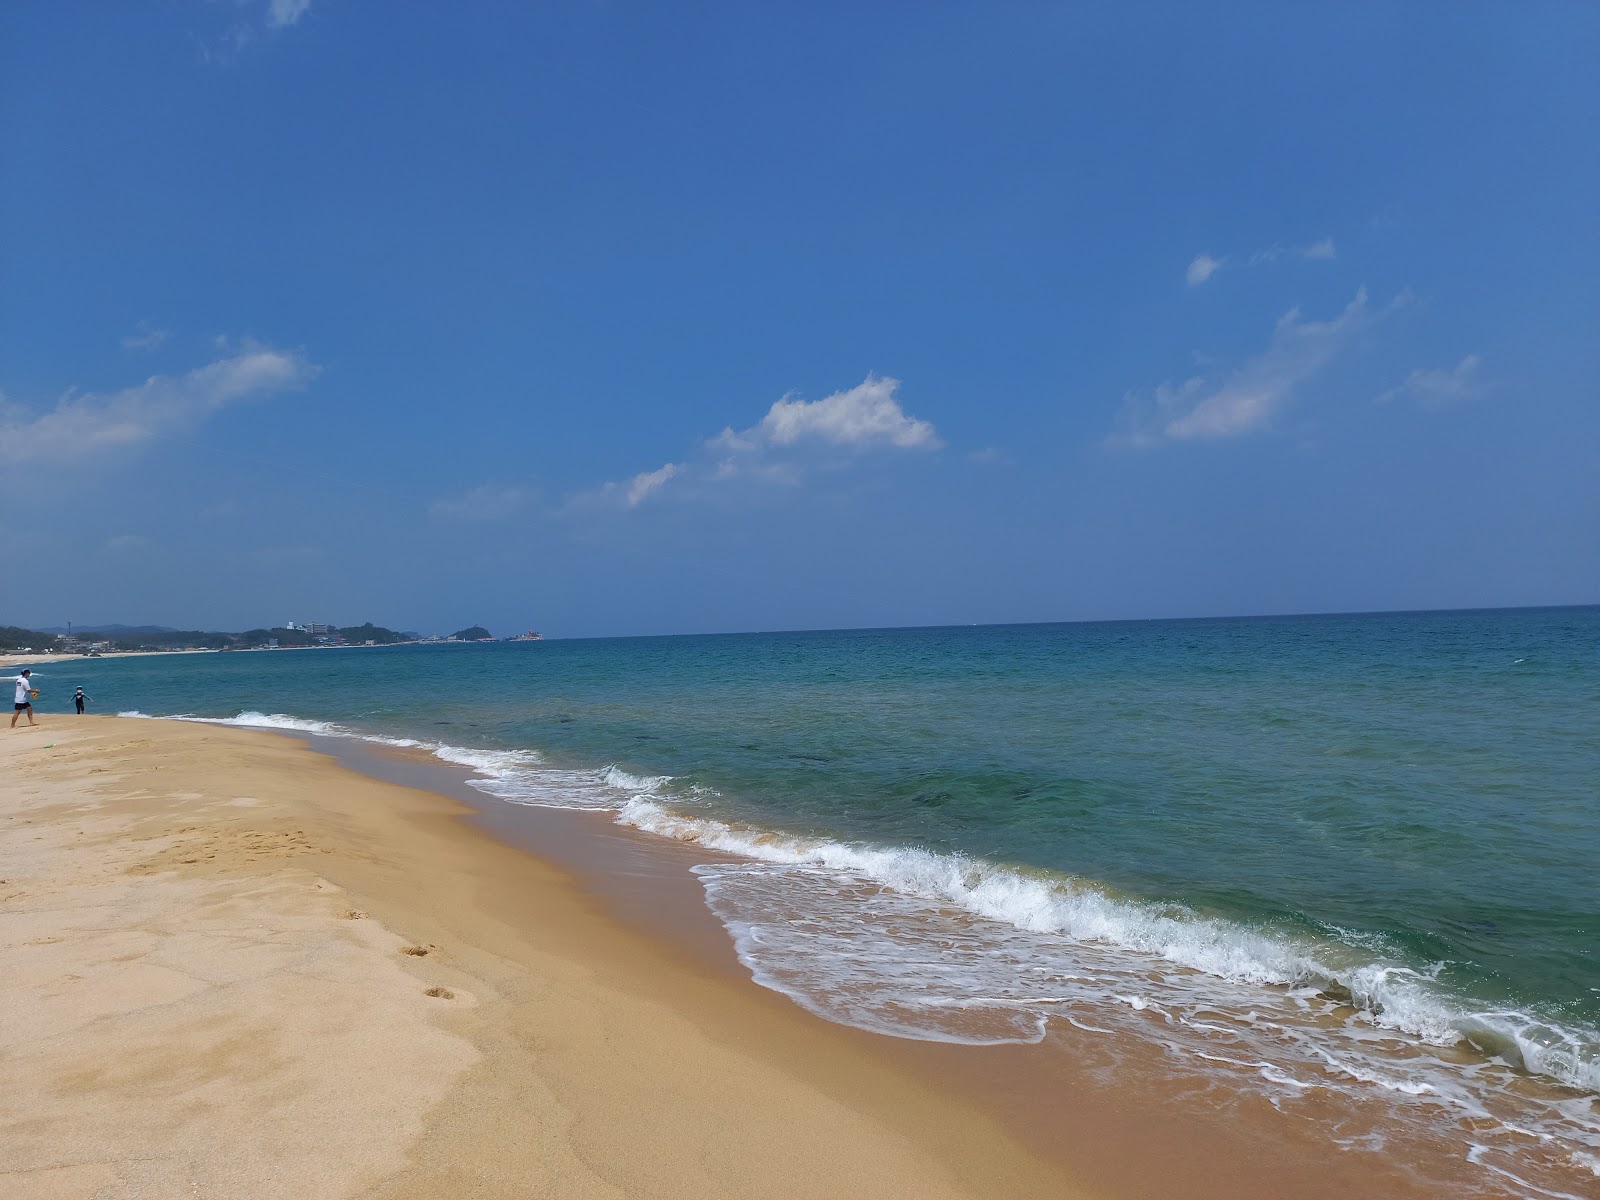 Fotografie cu Wonpo Beach - locul popular printre cunoscătorii de relaxare